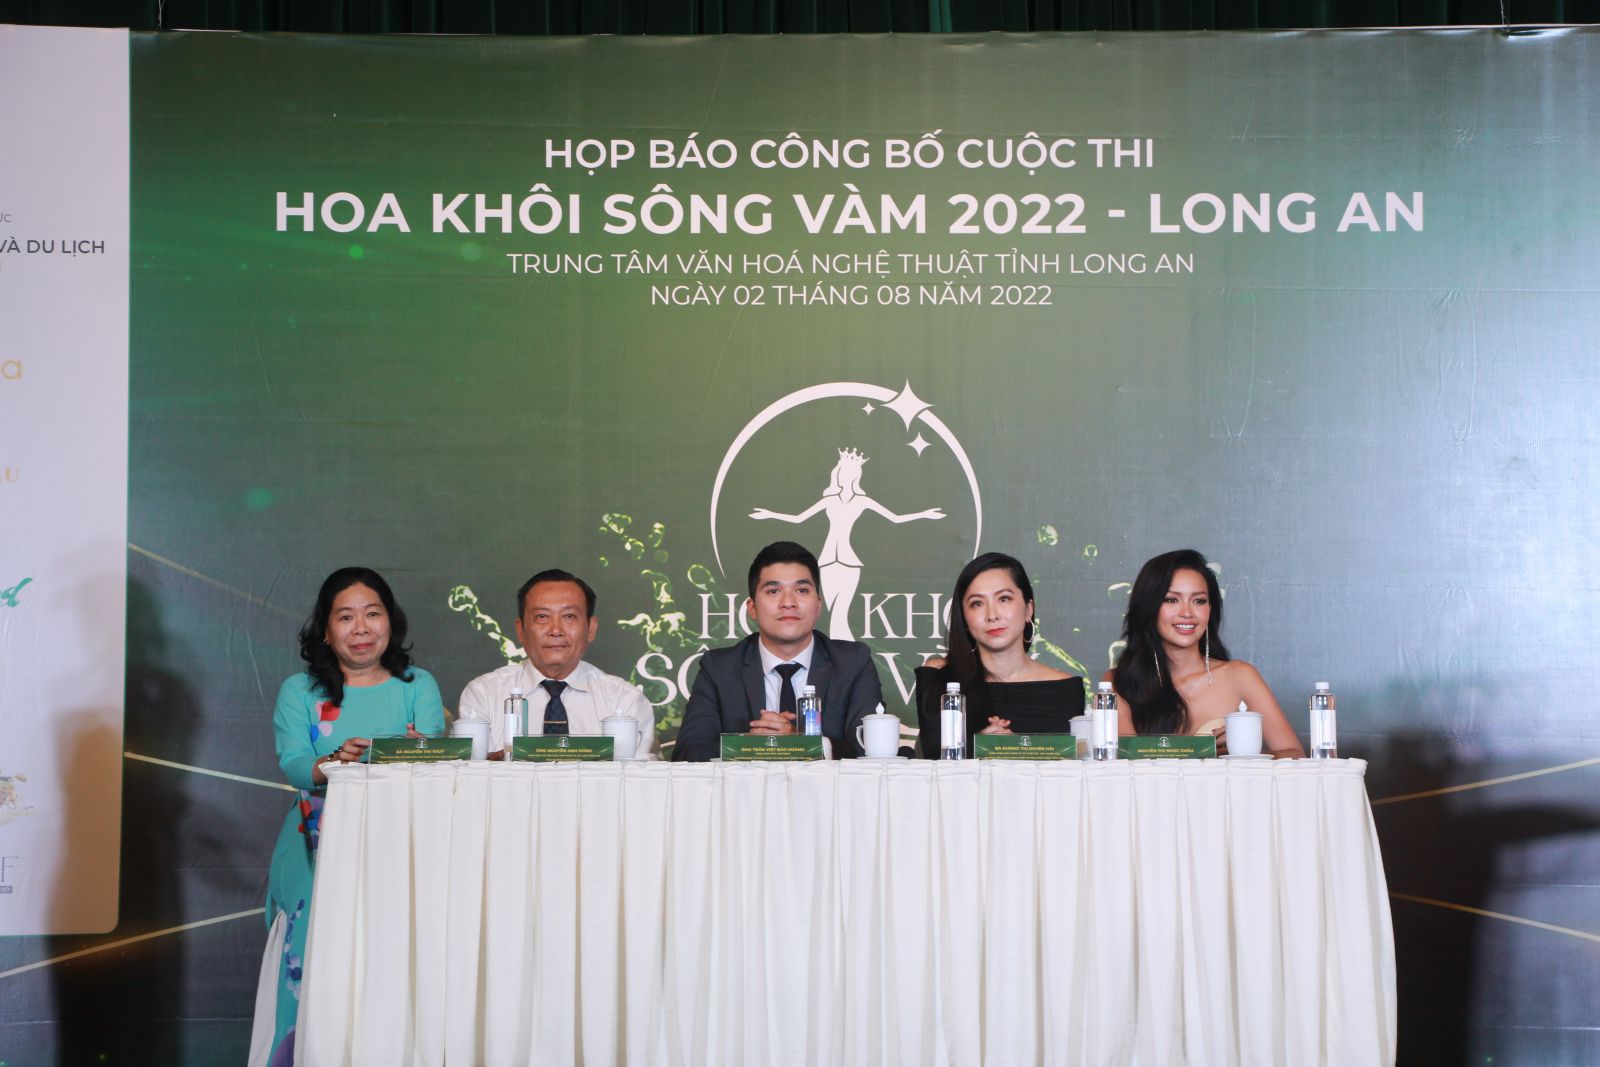 Khởi động cuộc thi Hoa khôi sông Vàm 2022 